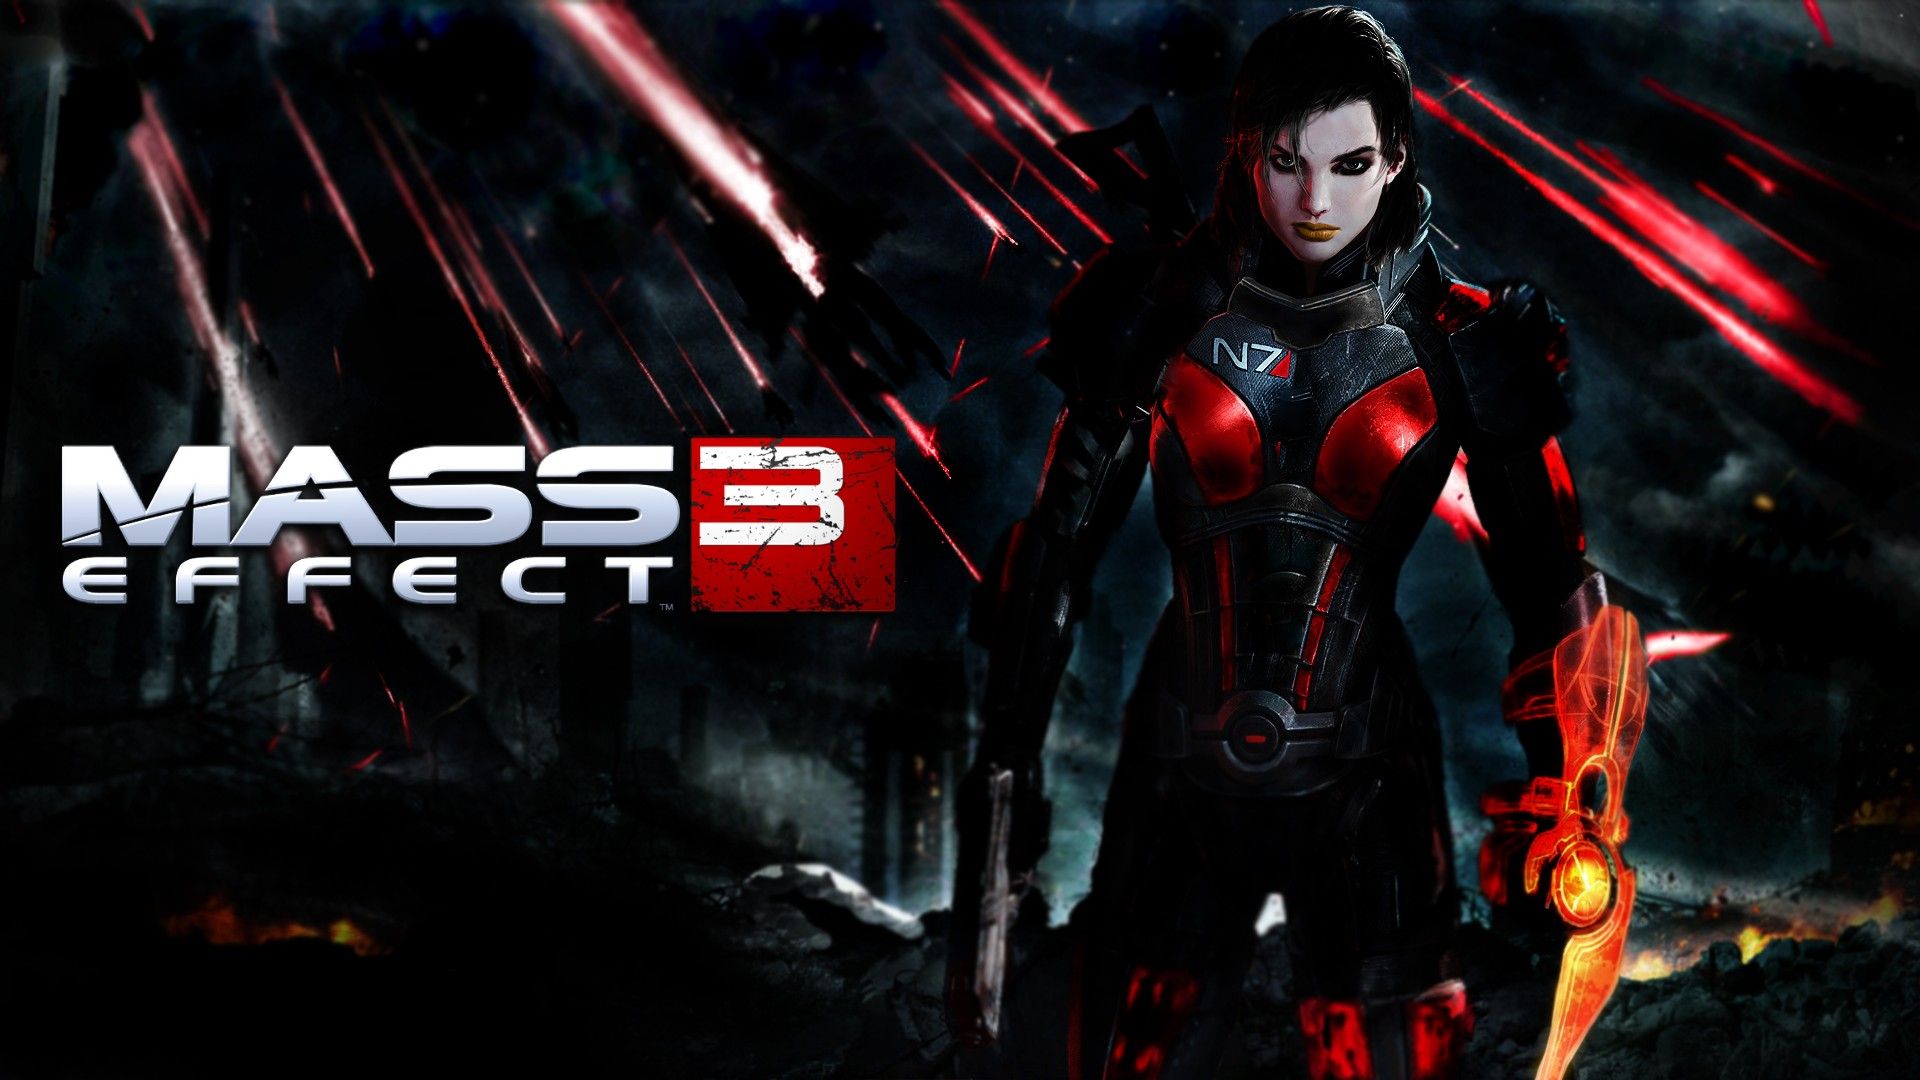 Mass Effect 3 Backgrounds